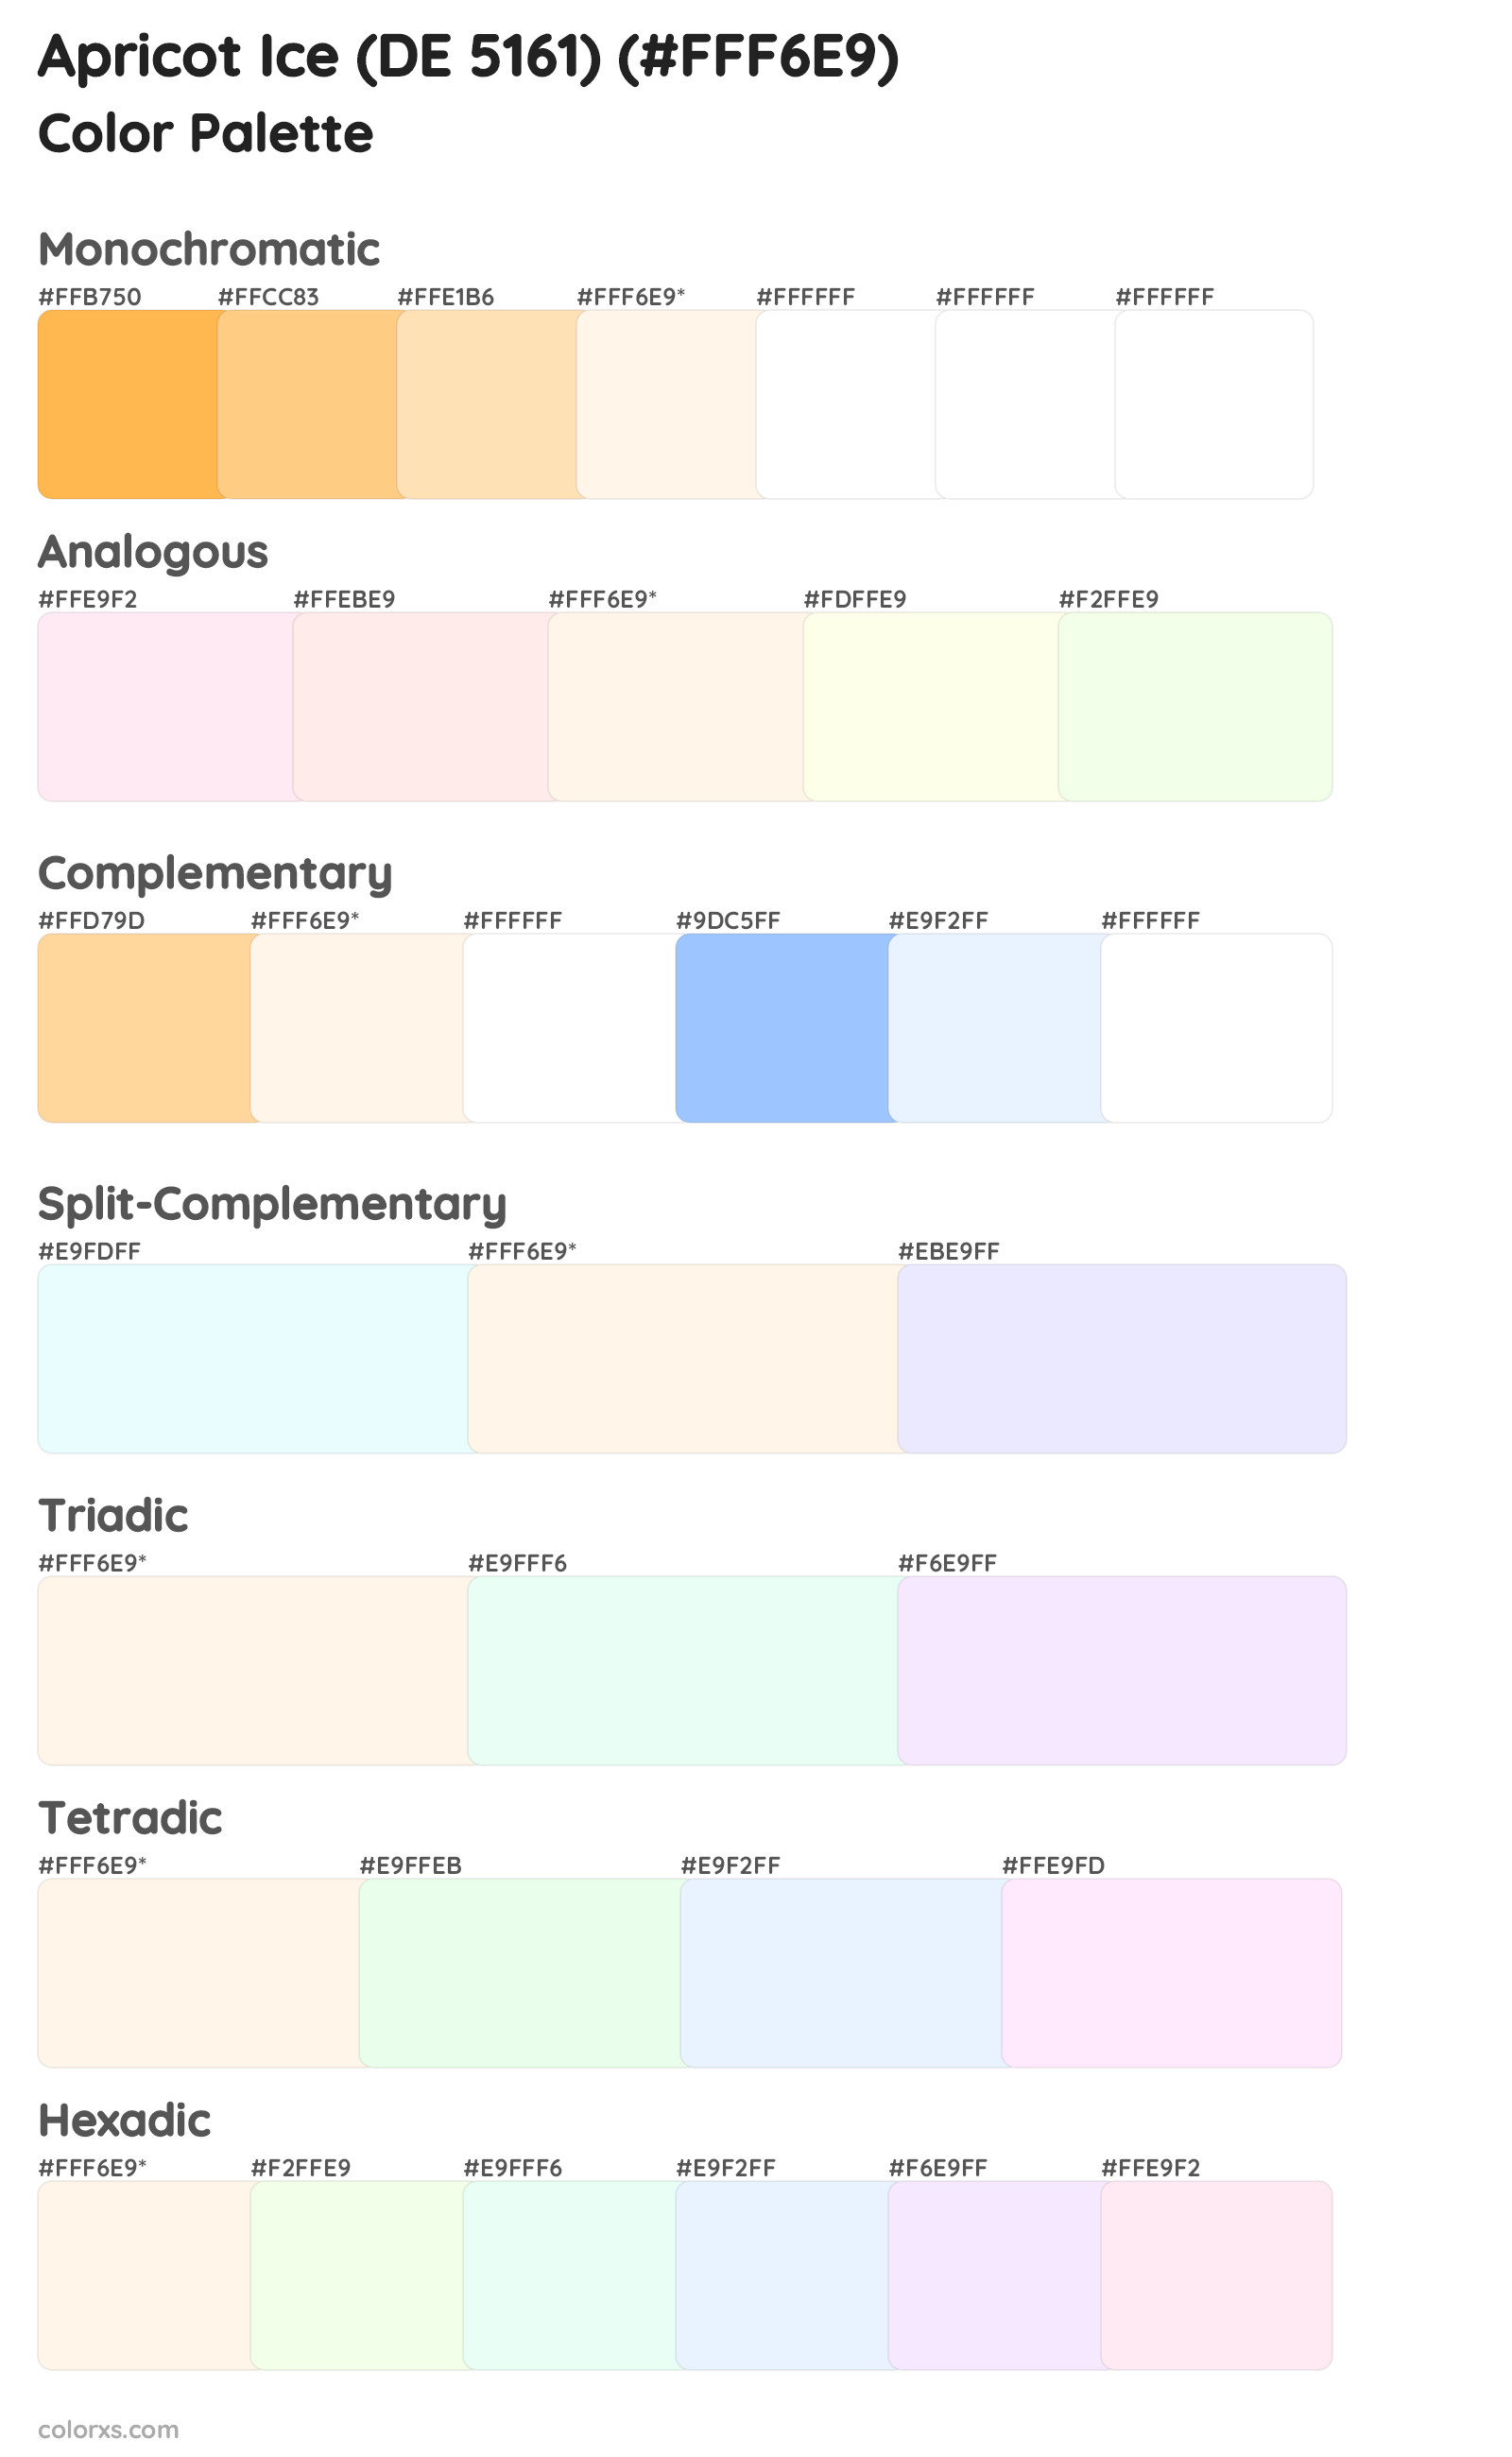 Apricot Ice (DE 5161) Color Scheme Palettes